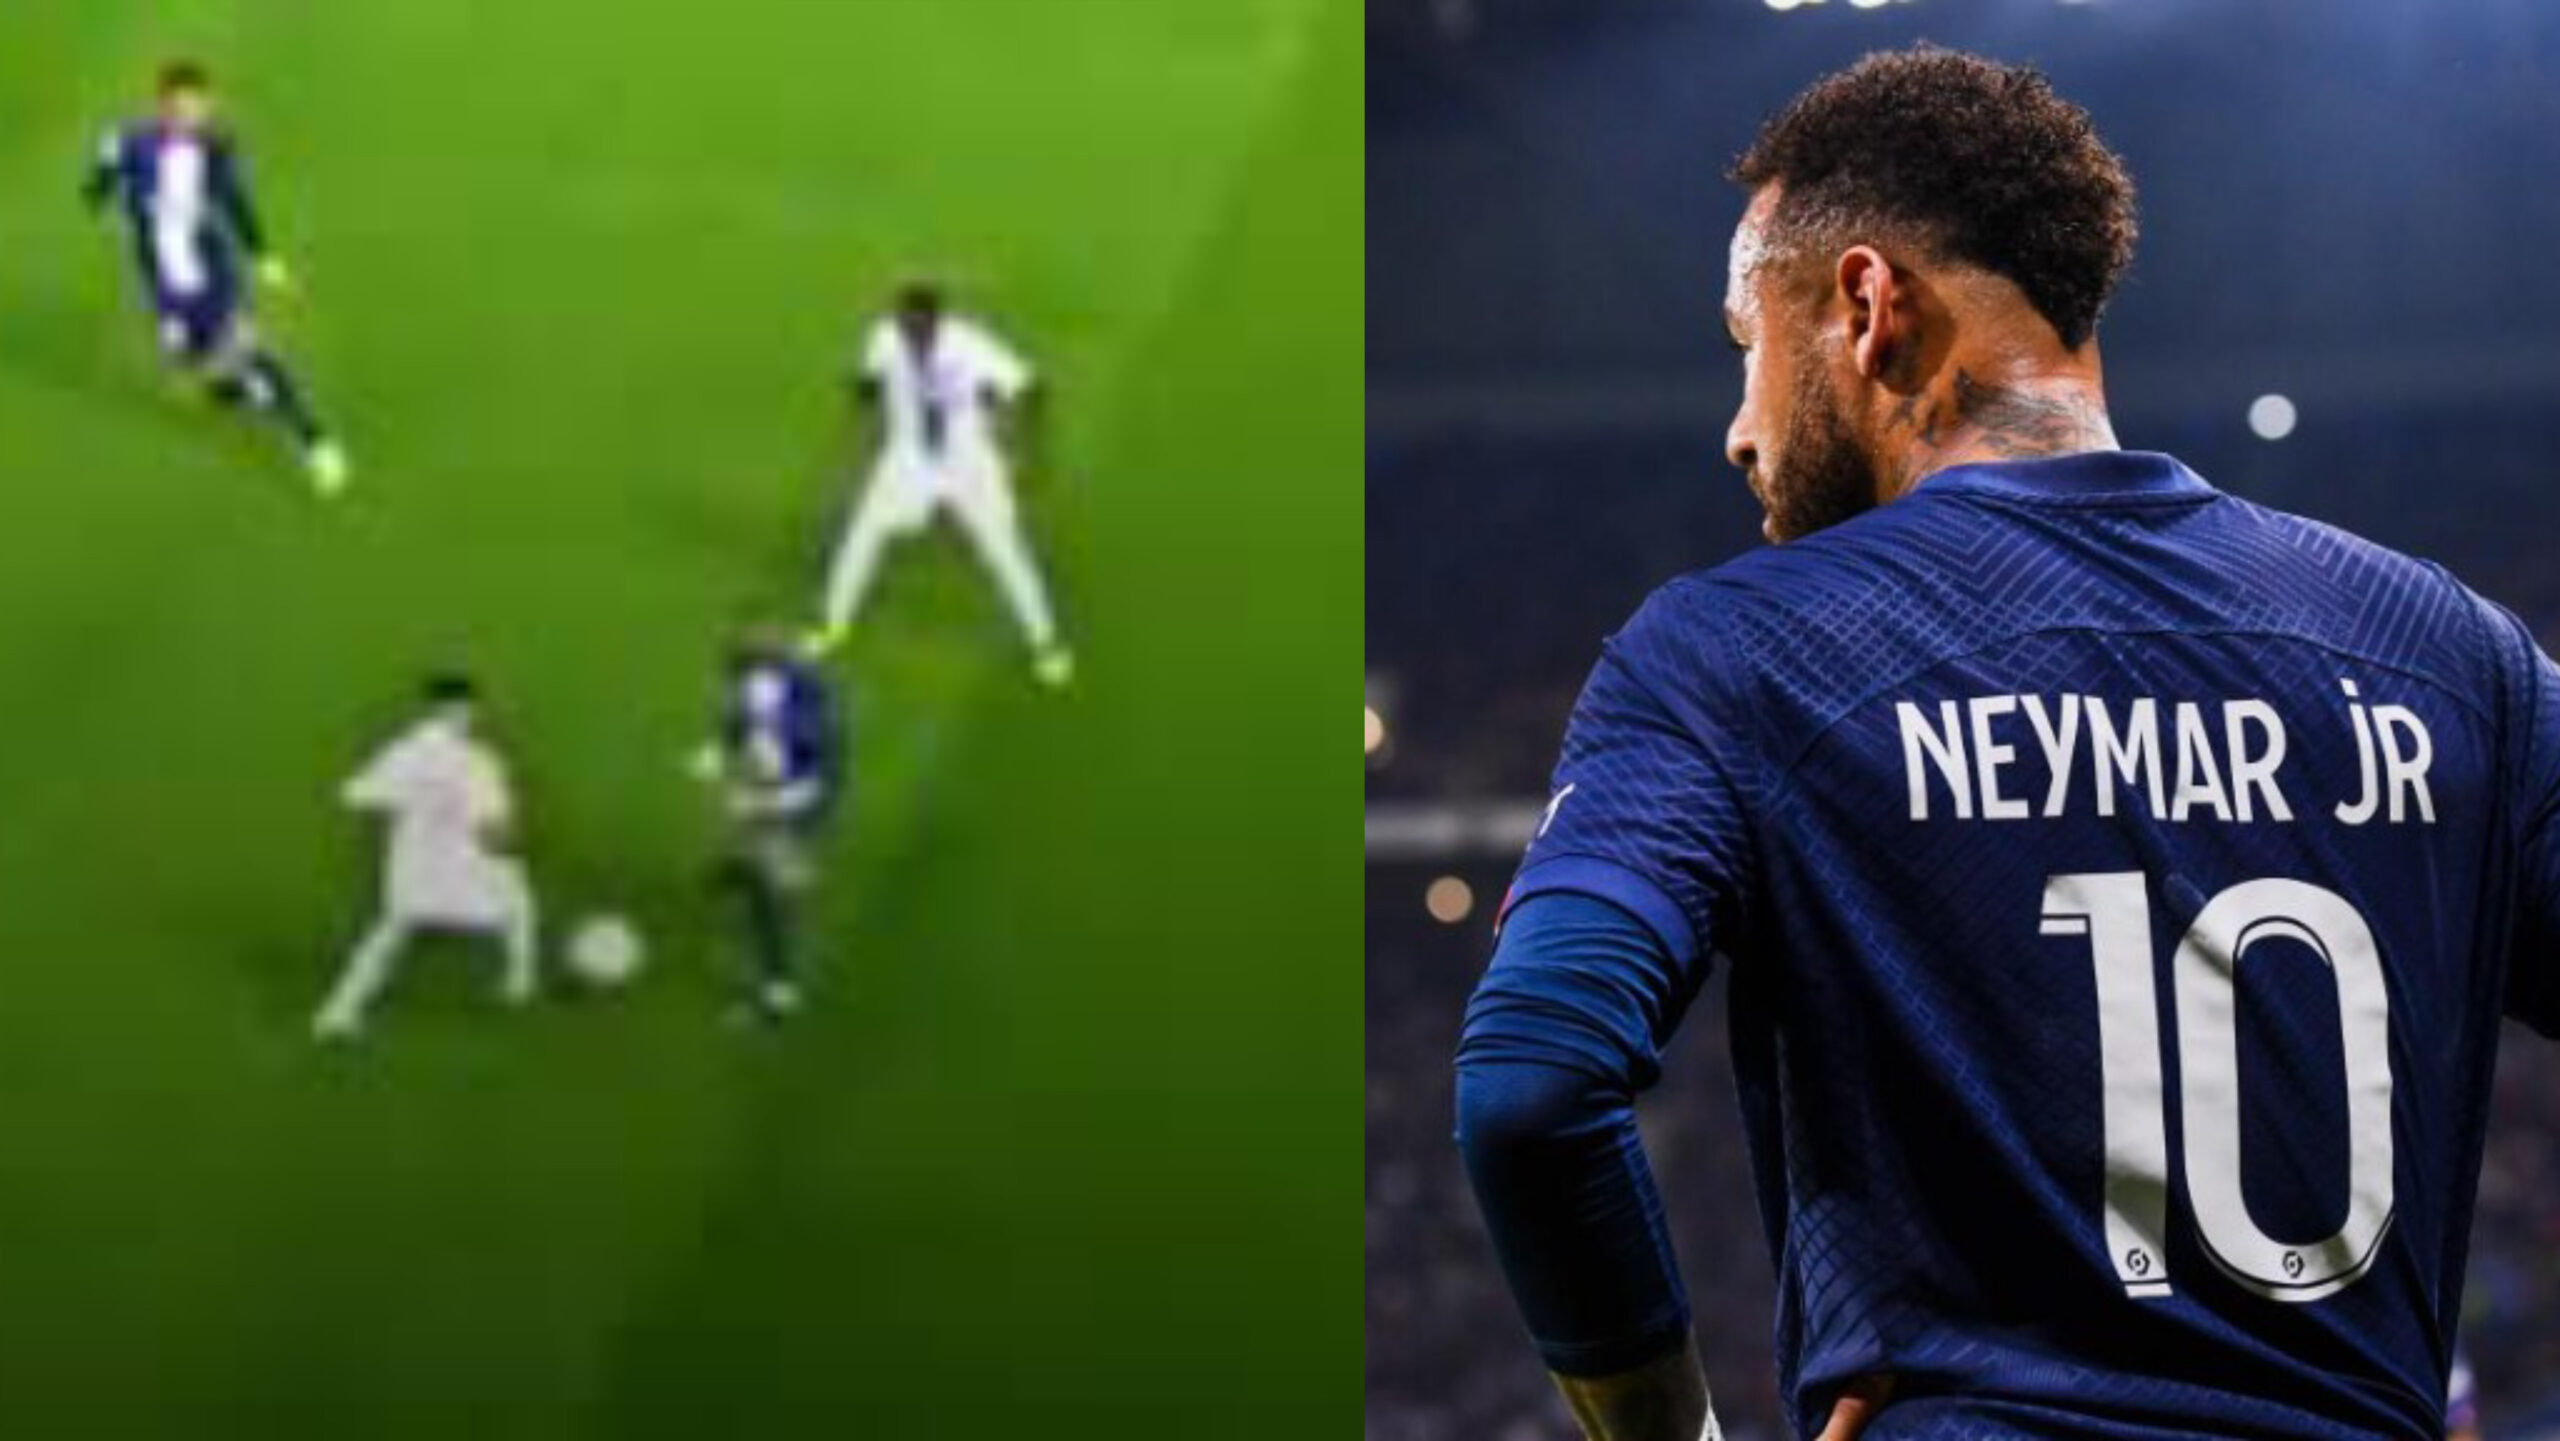 Neymar mange un petit pont de Youcef Atal, sa réaction derrière surprend les fans (vidéo)